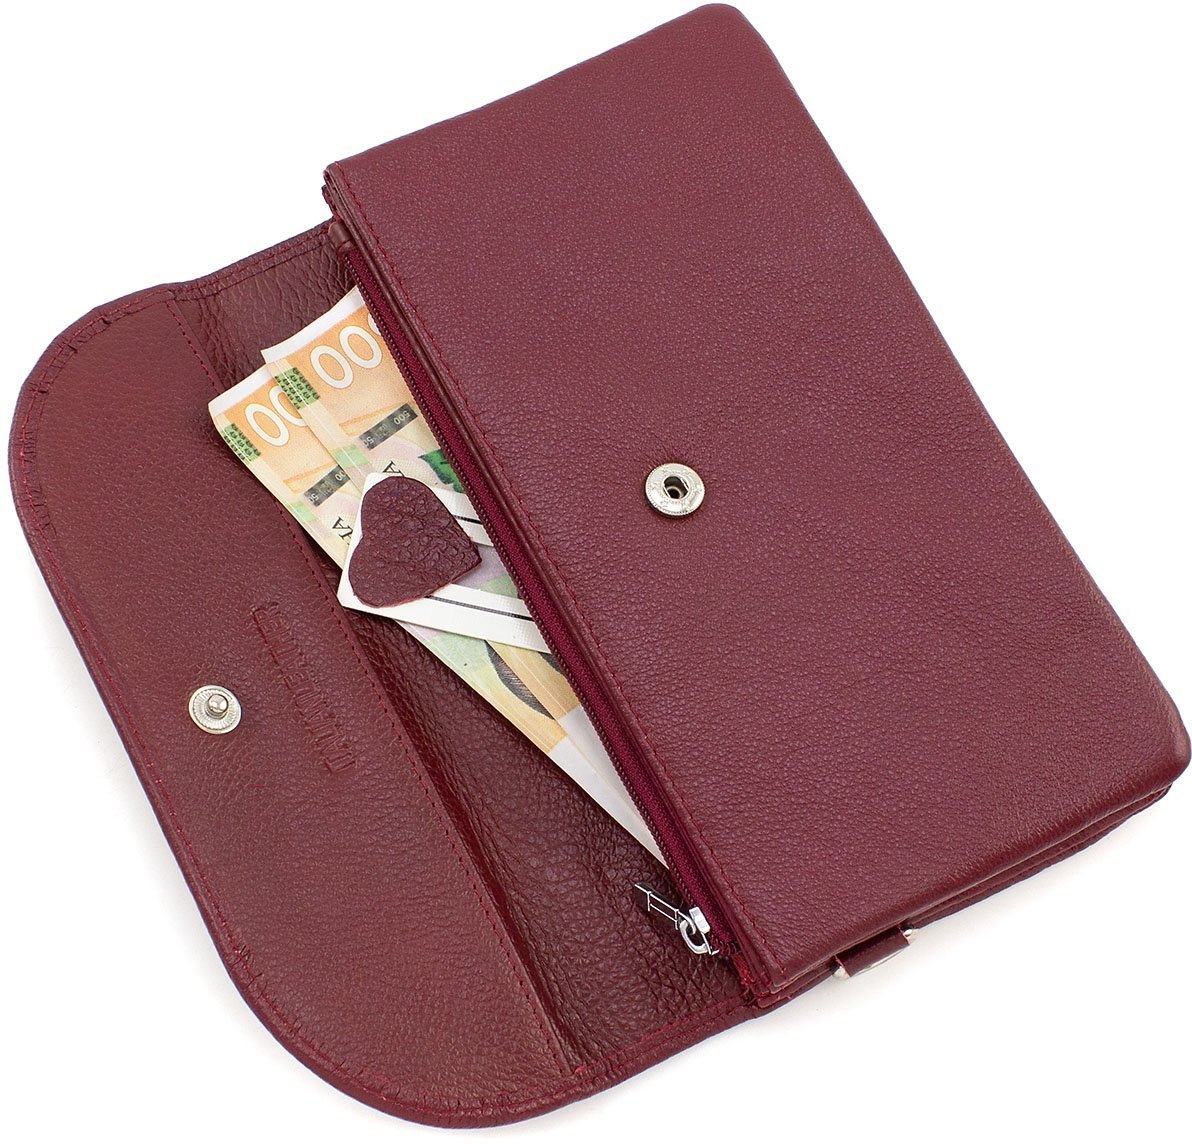 Бордовий жіночий гаманець-клатч великого розміру з натуральної шкіри ST Leather (14035)